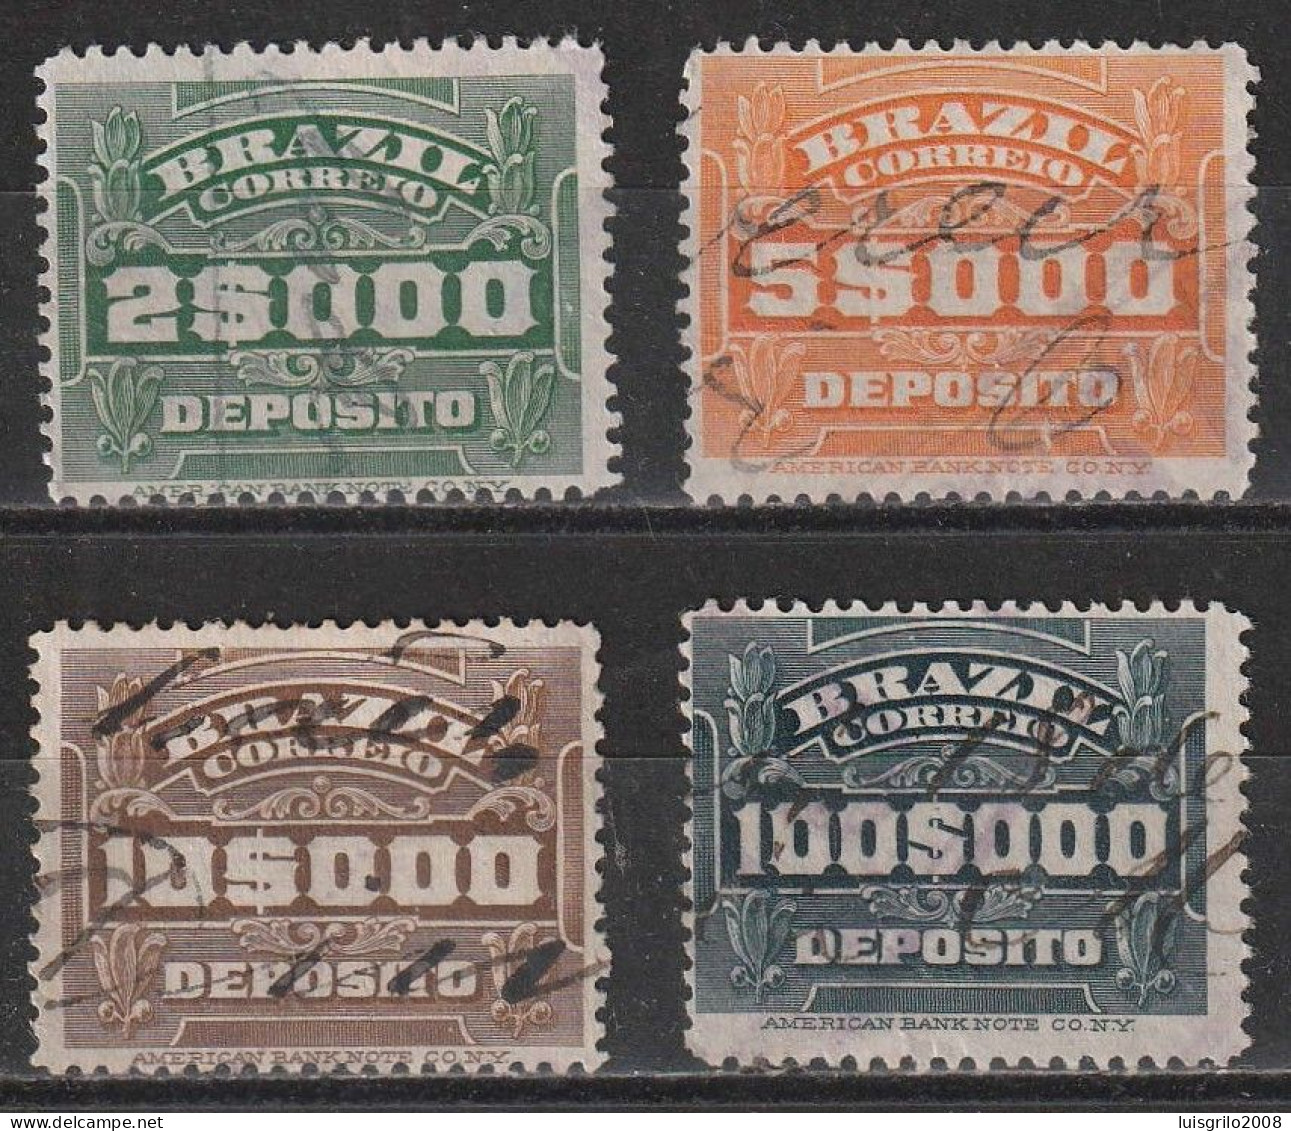 Revenue/ Fiscaux, Brazil 1920 - Depósito, Receita Fiscal -|- 2$000, 5$000, 10$000, 100$000 - Oficiales